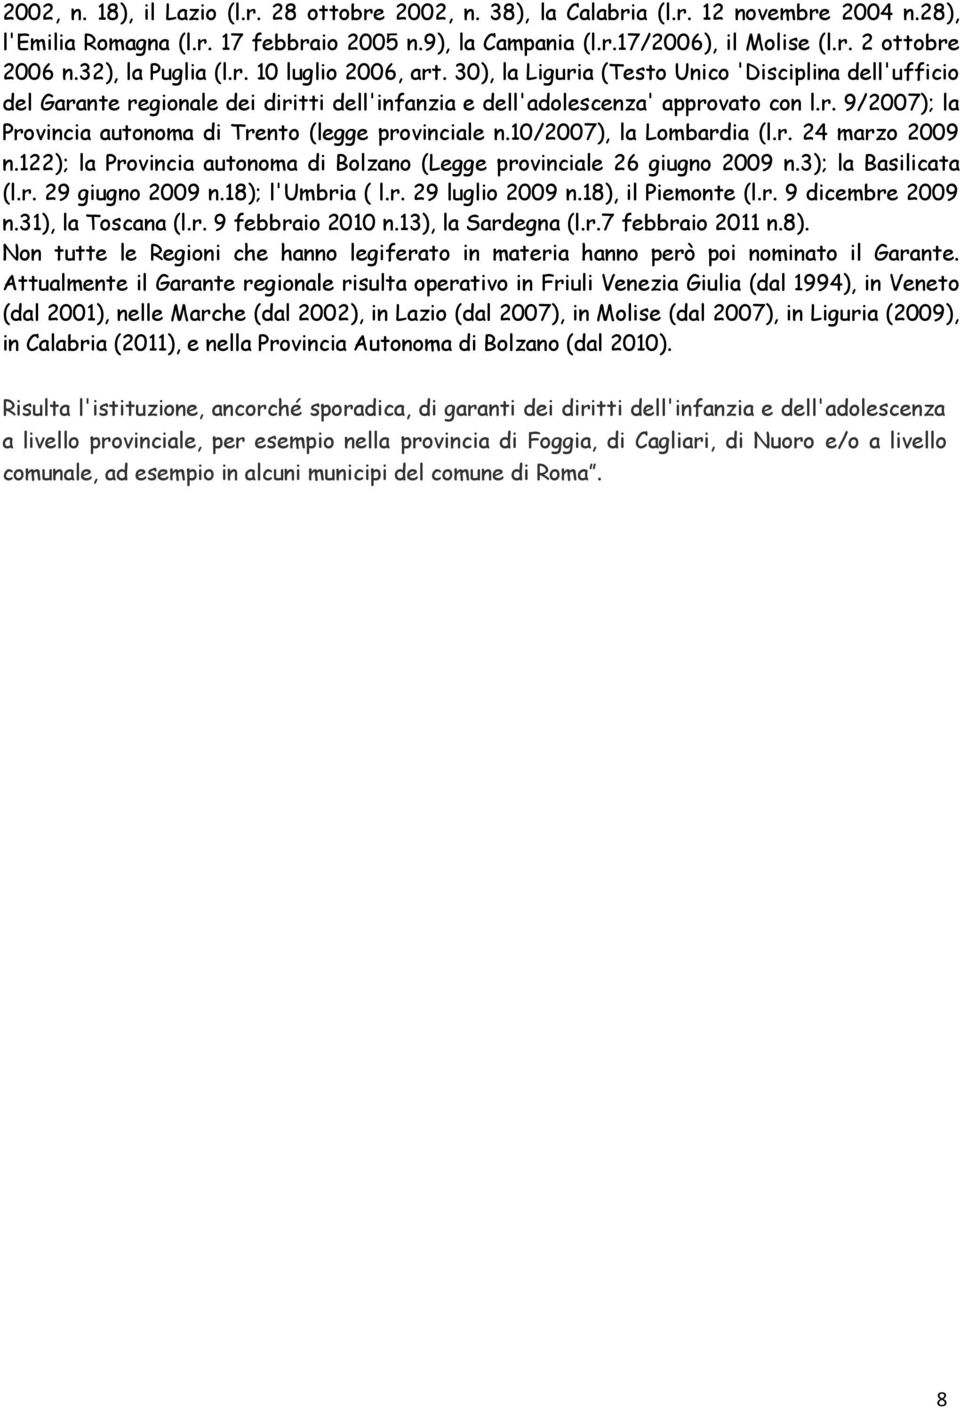 10/2007), la Lombardia (l.r. 24 marzo 2009 n.122); la Provincia autonoma di Bolzano (Legge provinciale 26 giugno 2009 n.3); la Basilicata (l.r. 29 giugno 2009 n.18); l'umbria ( l.r. 29 luglio 2009 n.